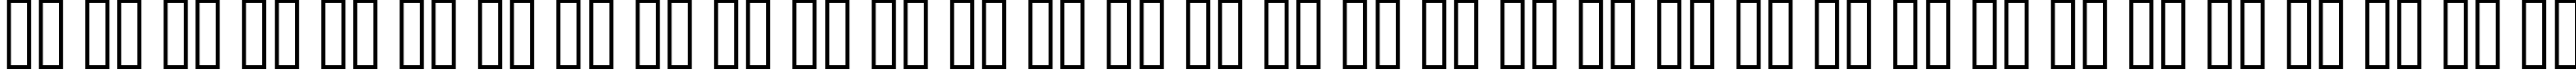 Пример написания русского алфавита шрифтом DF667  Plastic Jesus